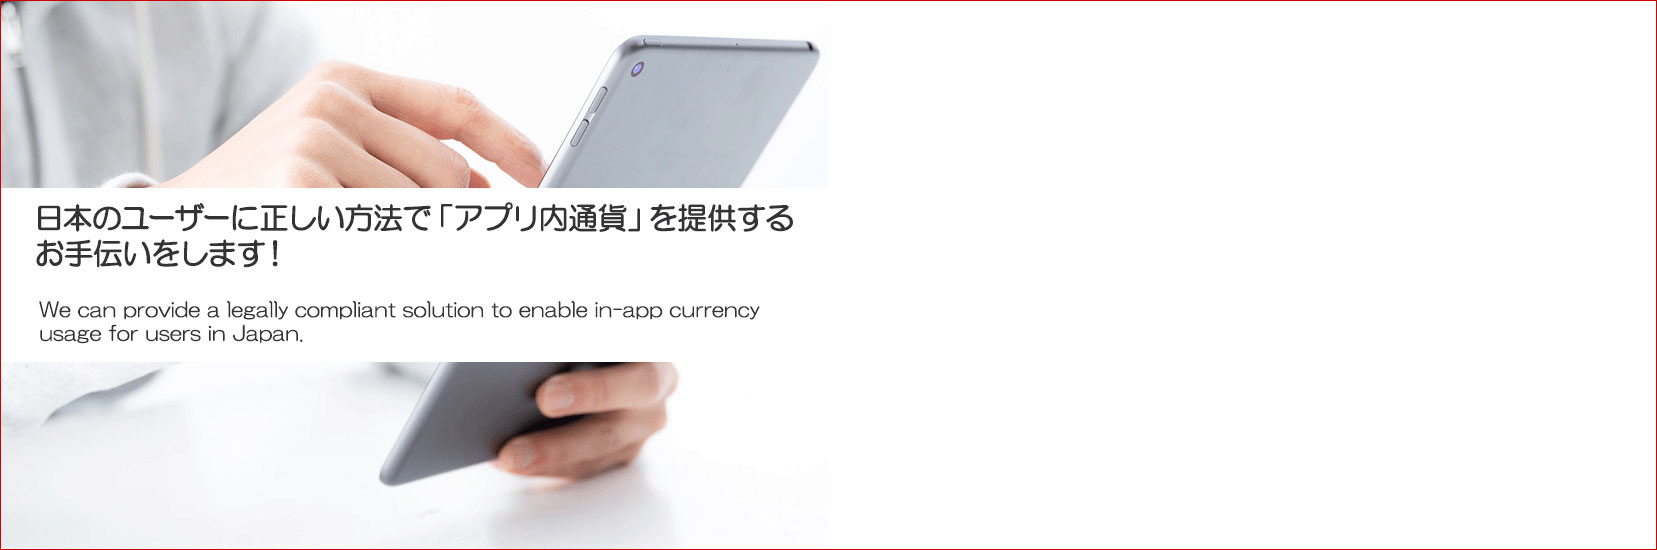 日本のユーザーに正しい方法で「アプリ内通貨」を提供するお手伝いをします！